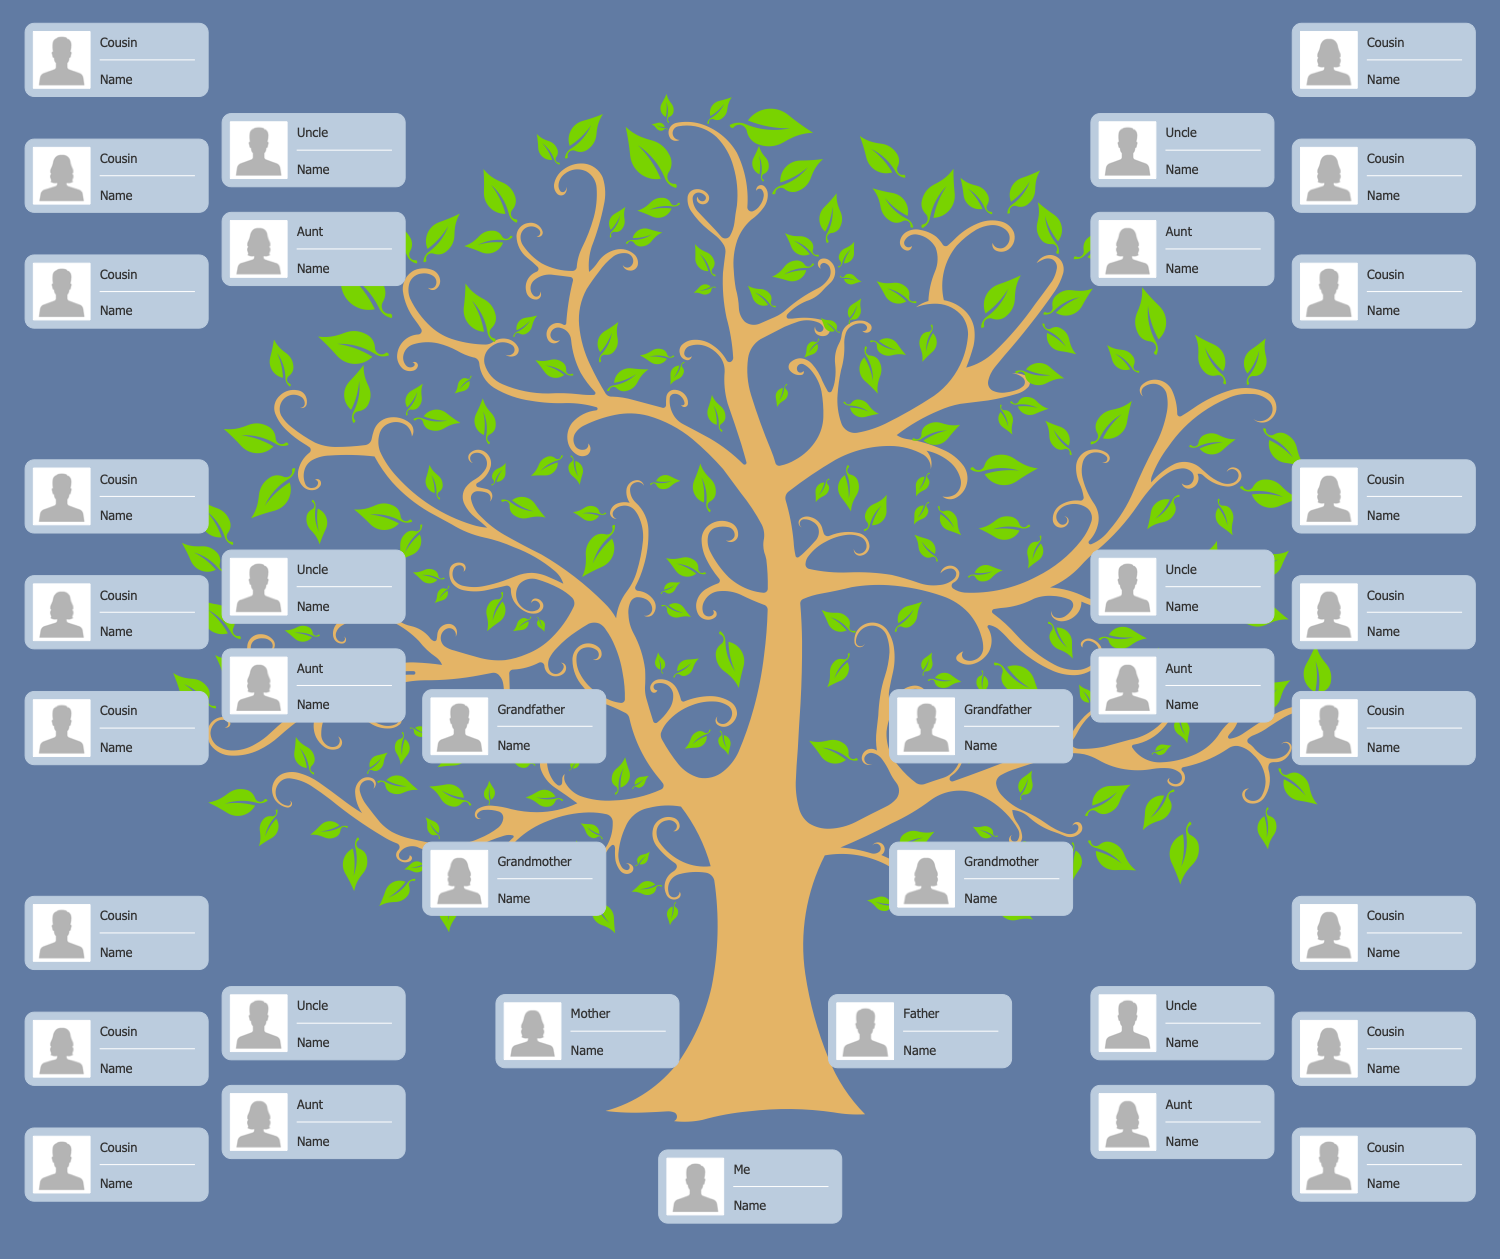 Family Tree Chart 